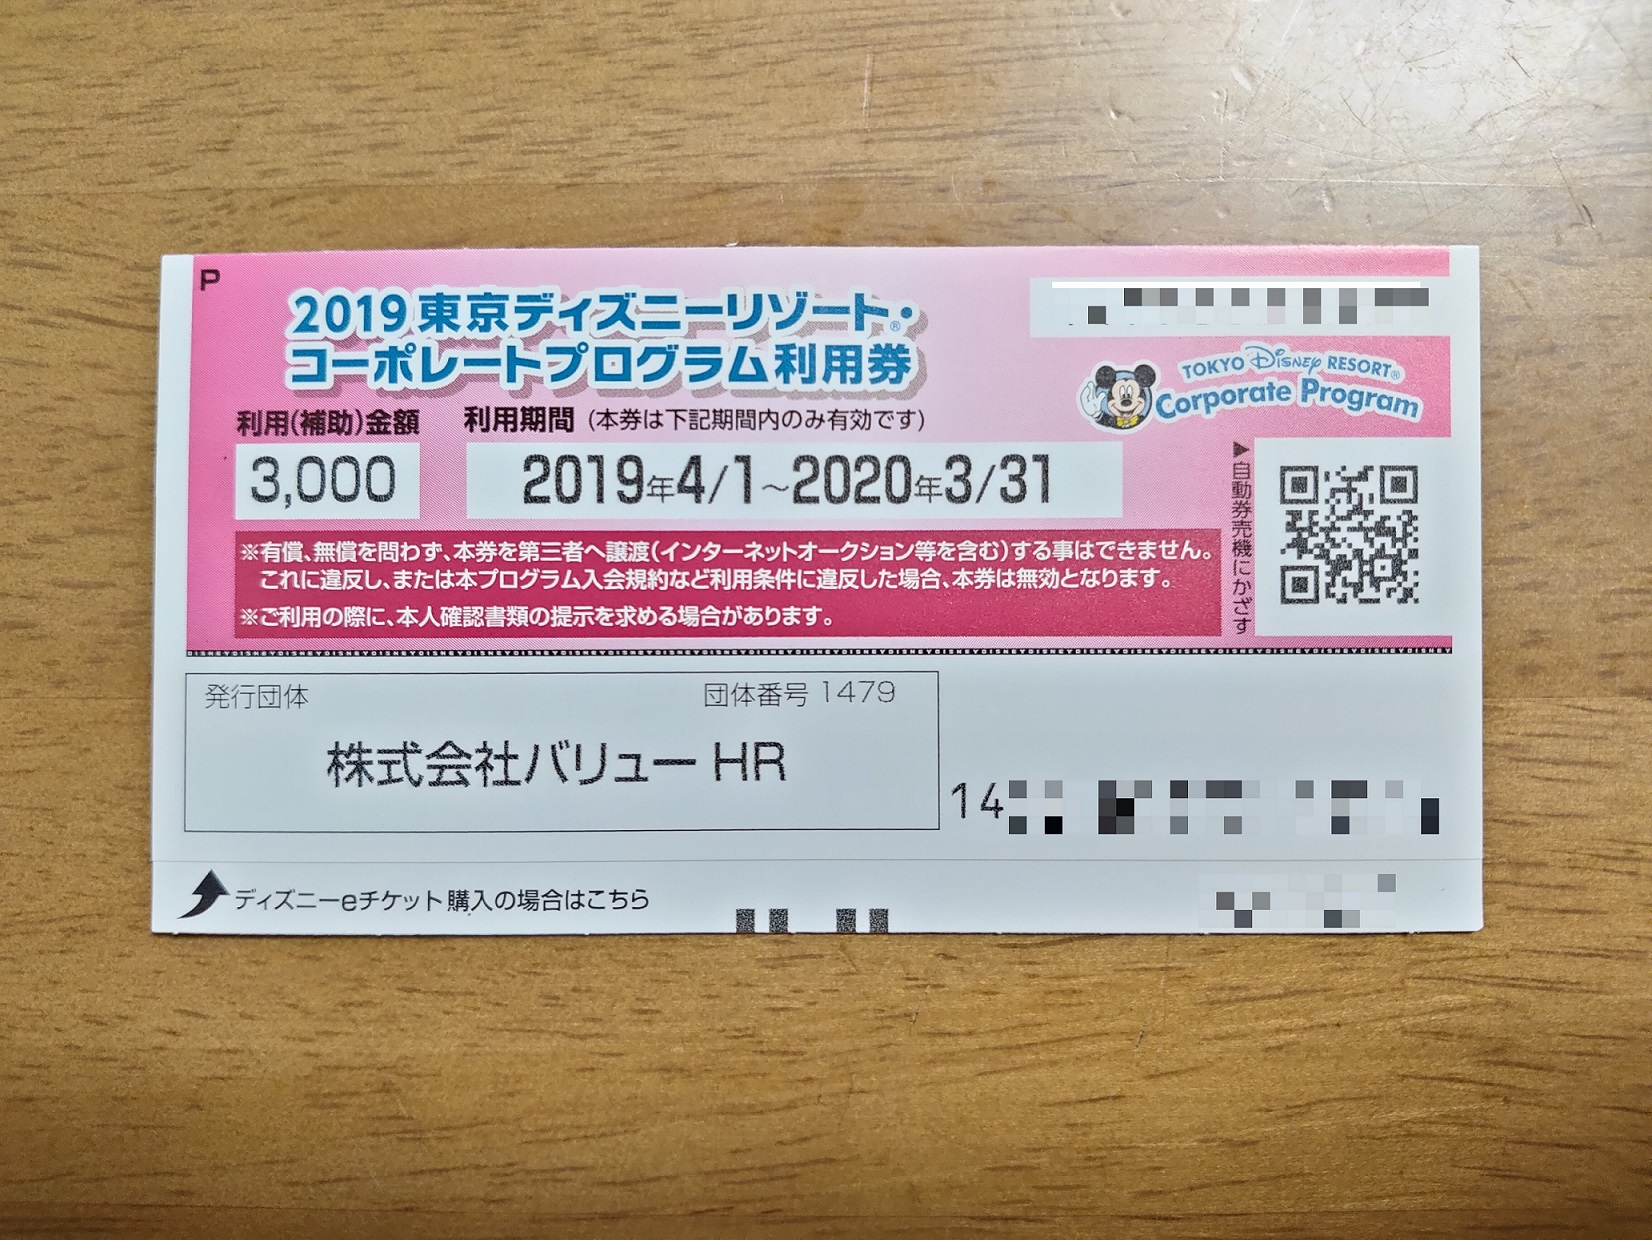 コーポレートプログラム利用券を使って東京ディズニーリゾートのパスポートを発券する方法 小茂根の暮らし